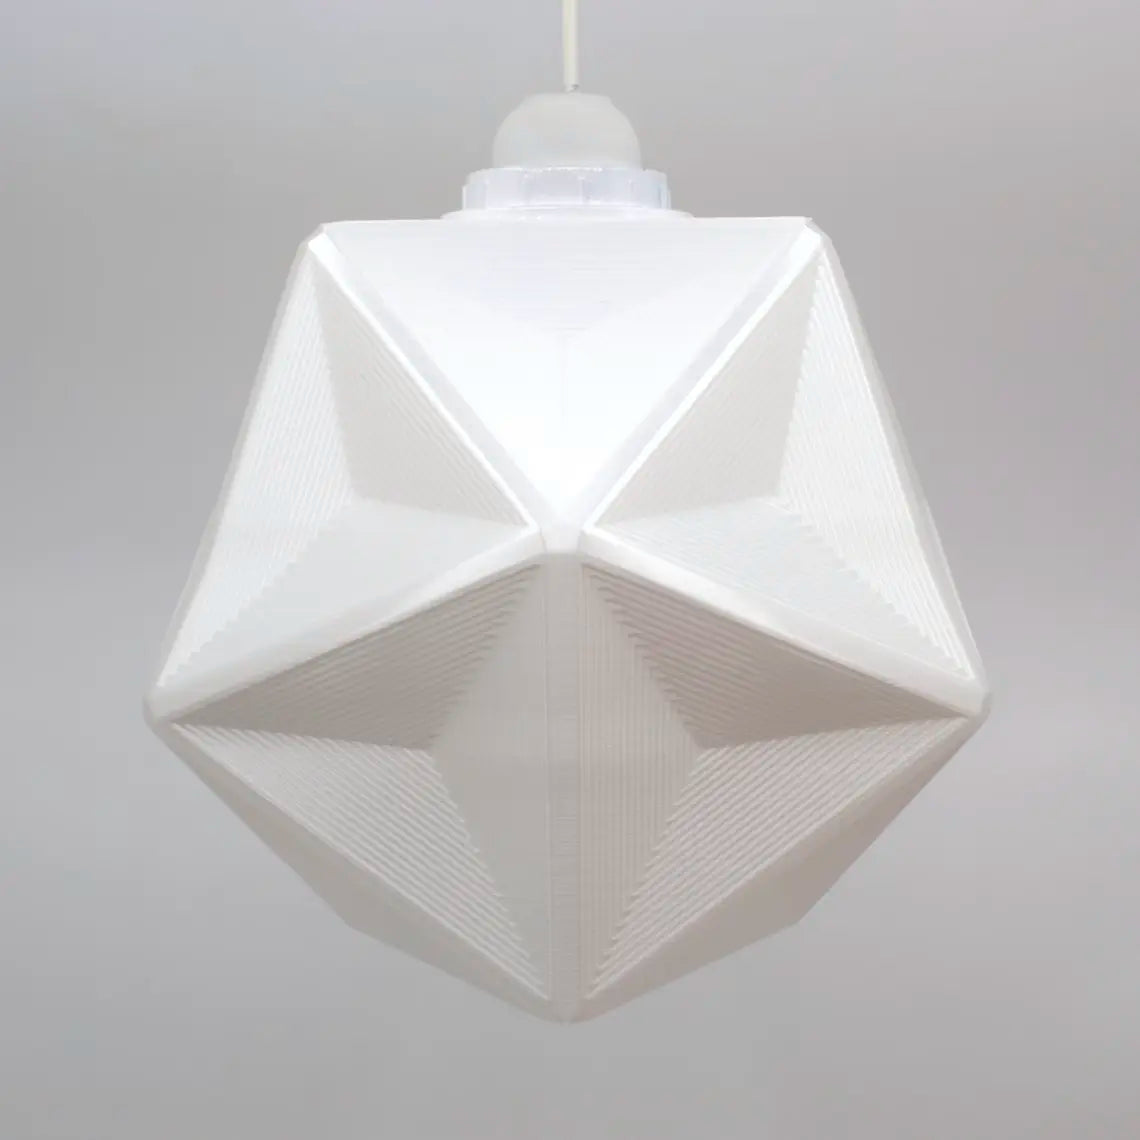 Tria Lampshade - Unique Modern Pendant Lampshade